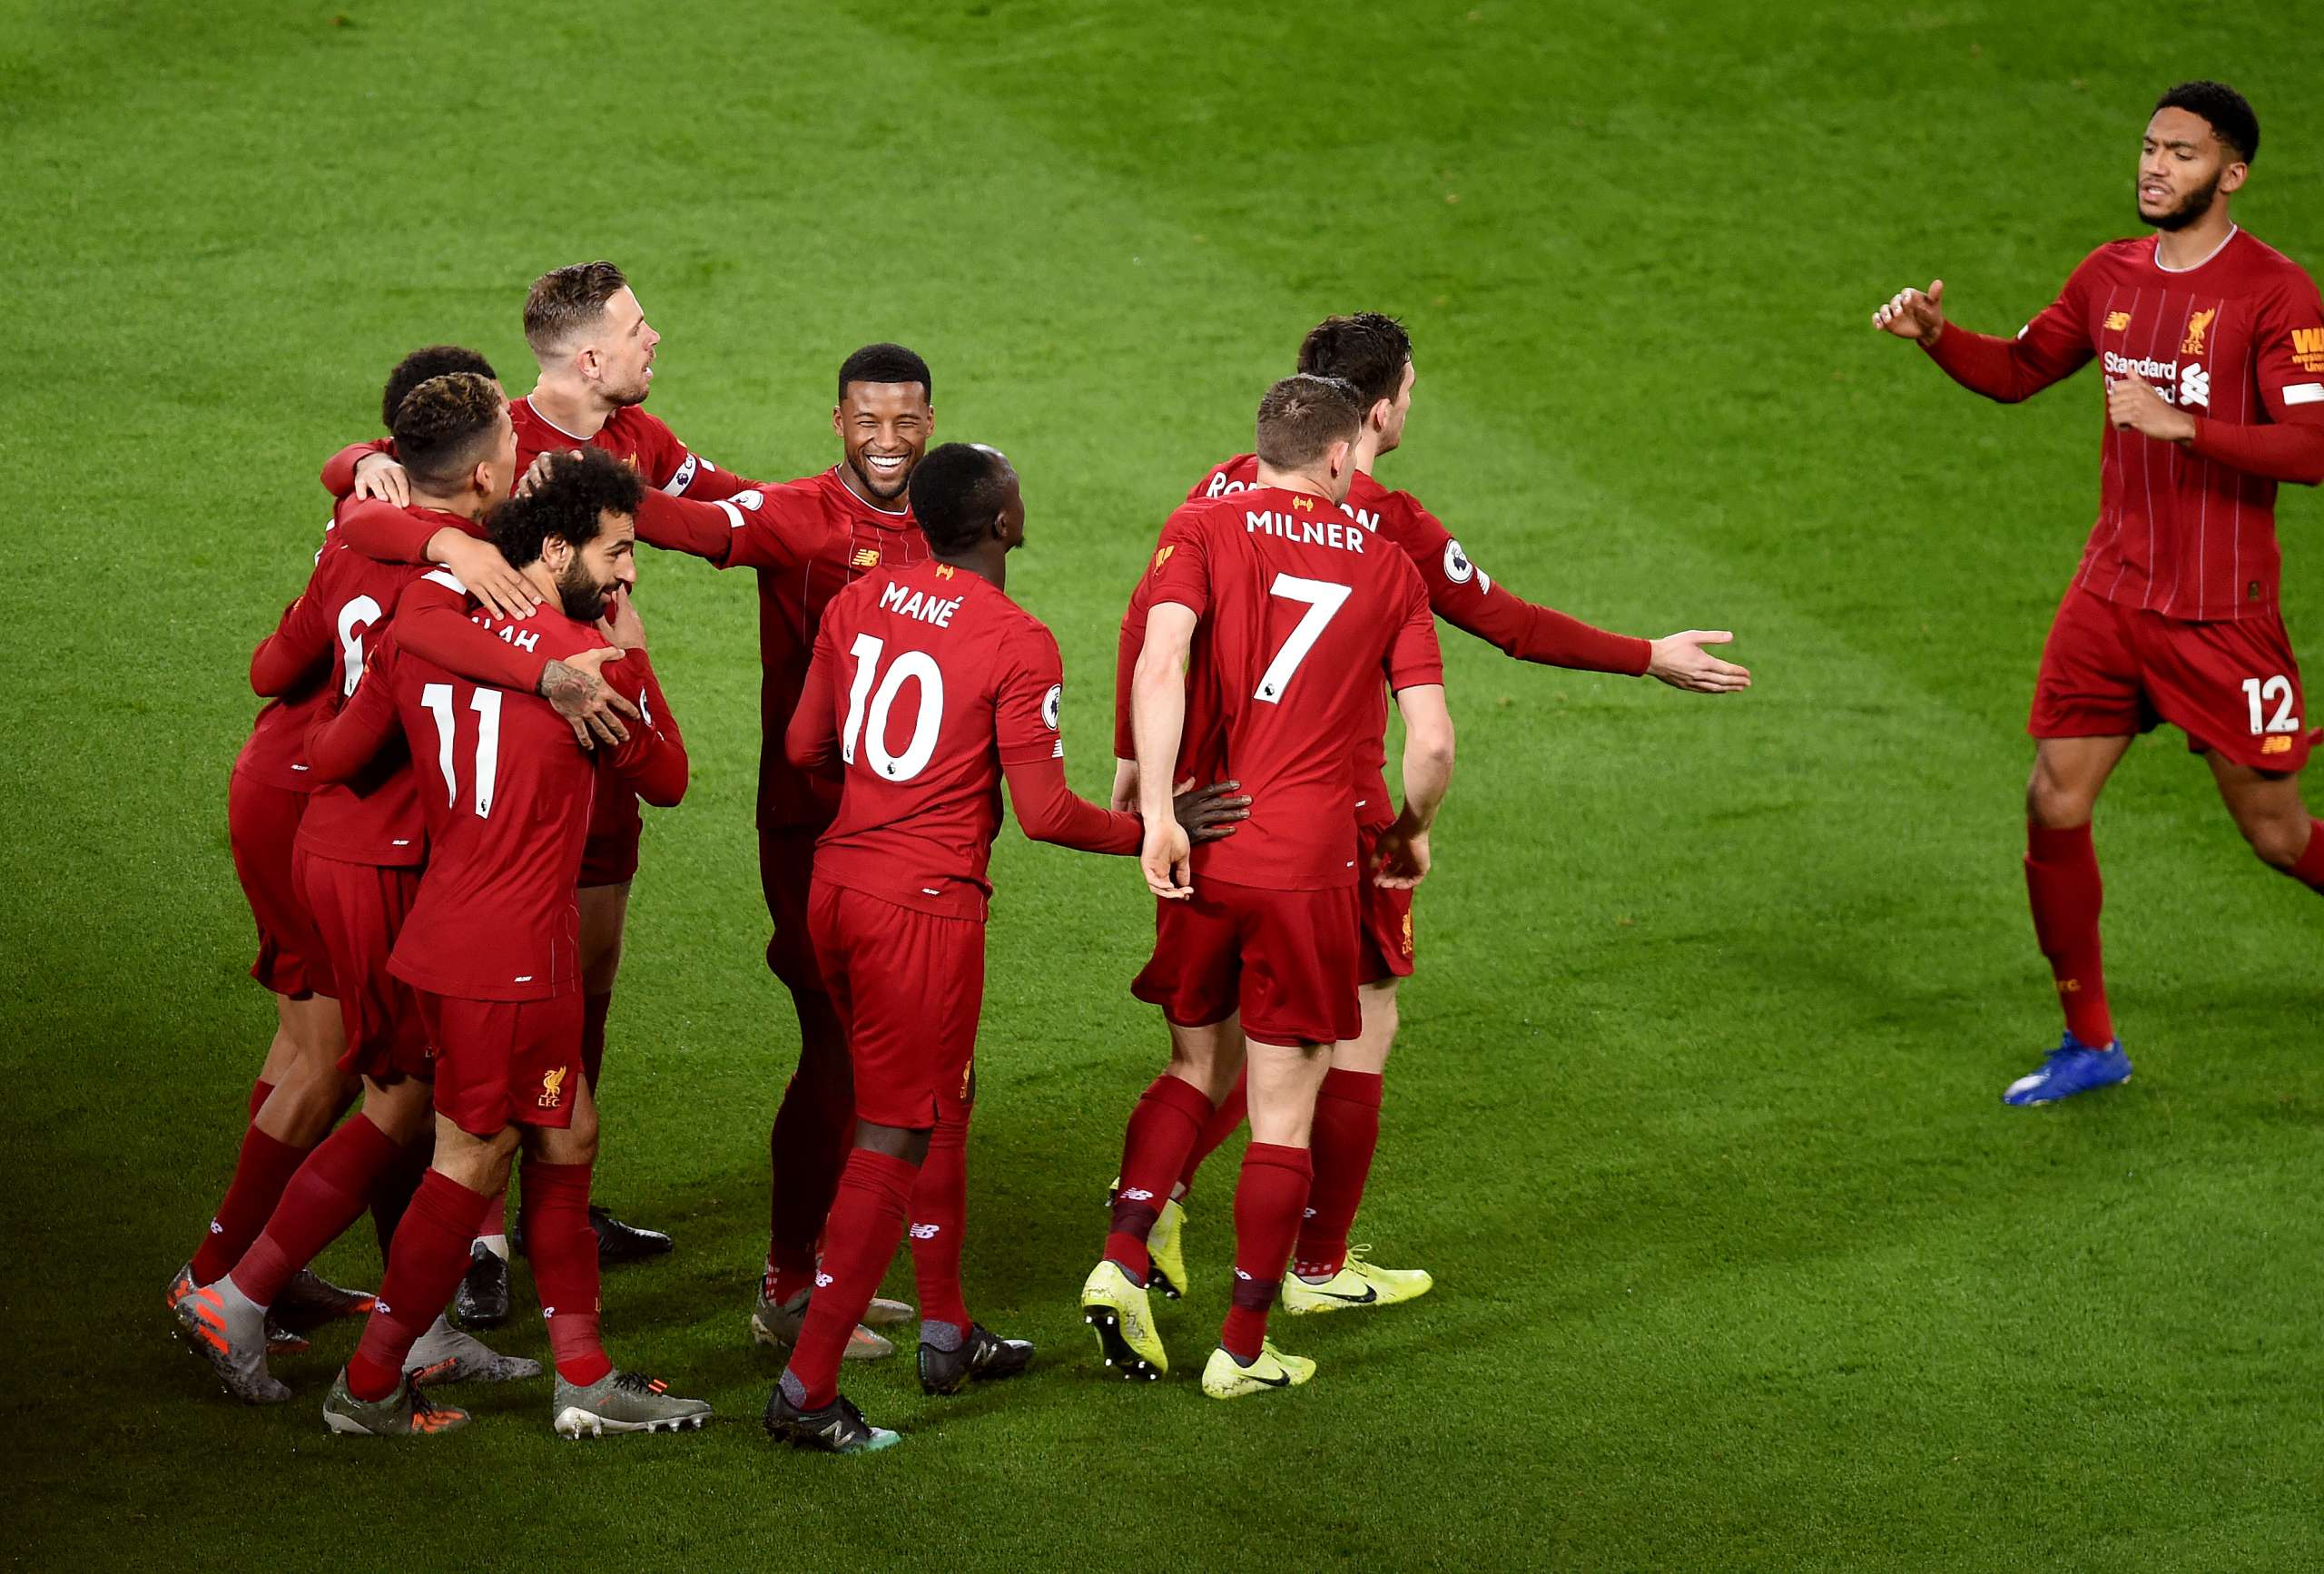 PLACAR FI: Com Liverpool campeão sem entrar em campo, veja os resultados desta quinta